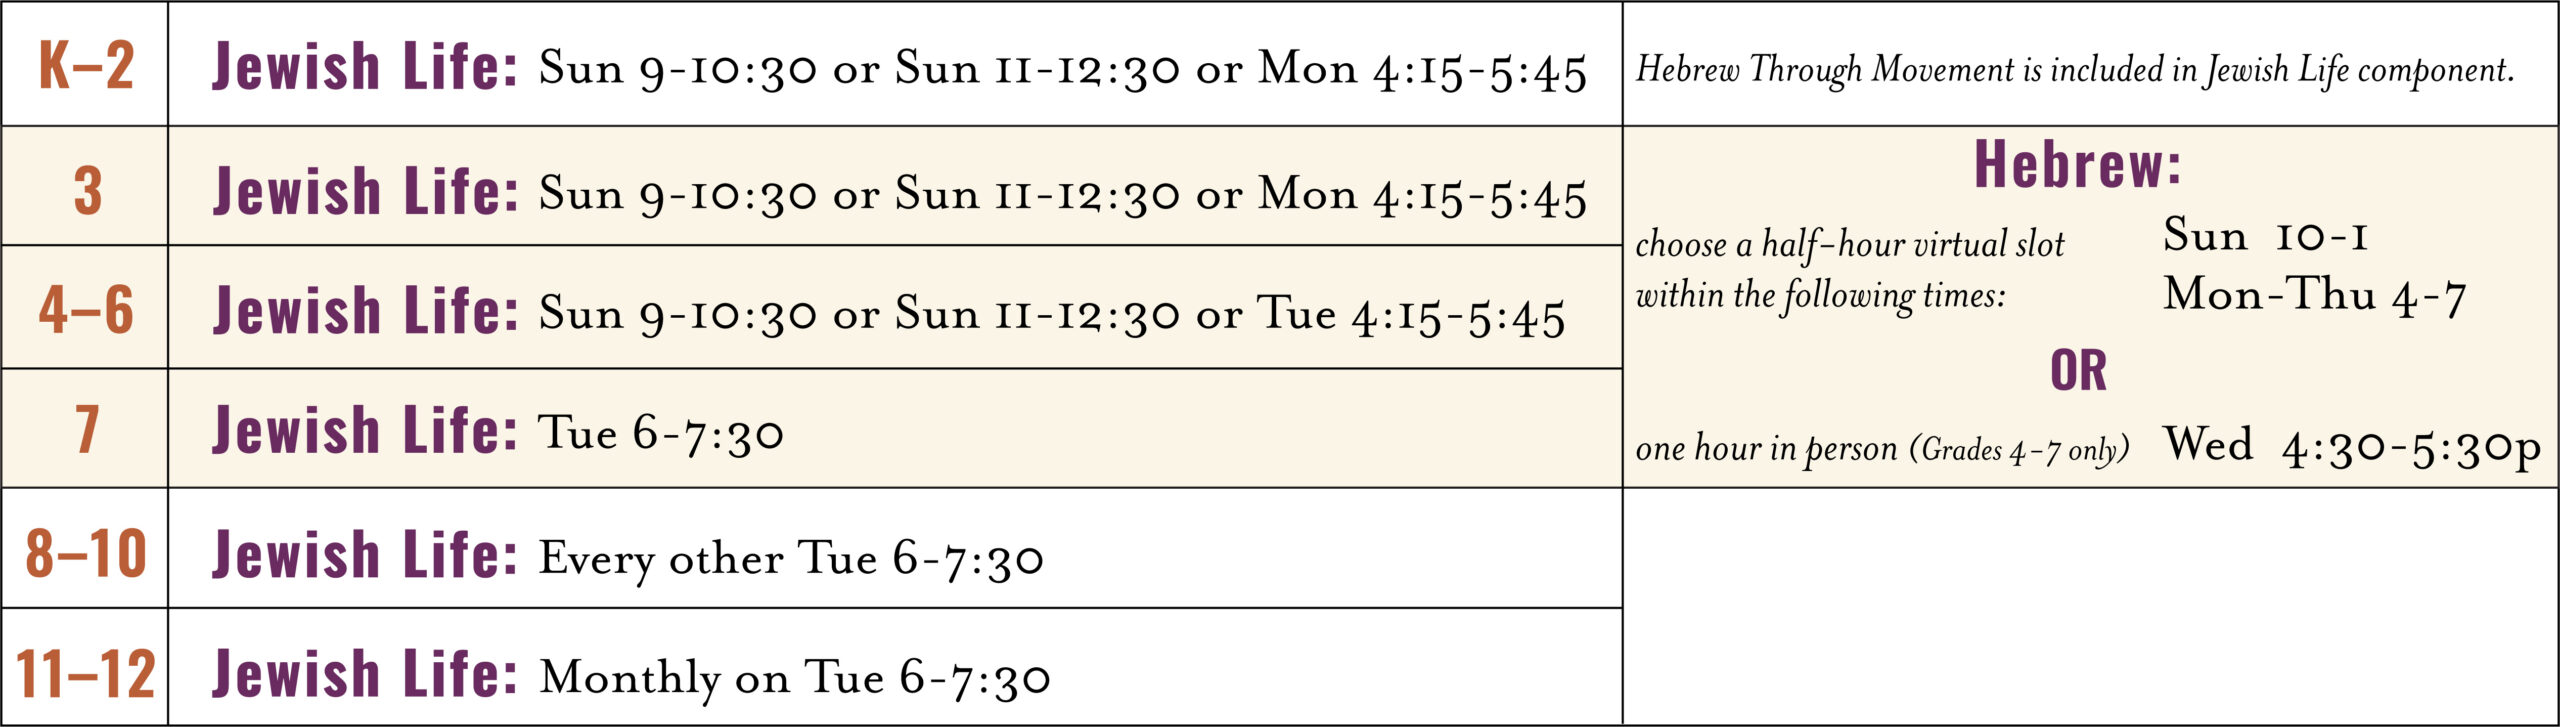 Kesher 22-23 Schedule